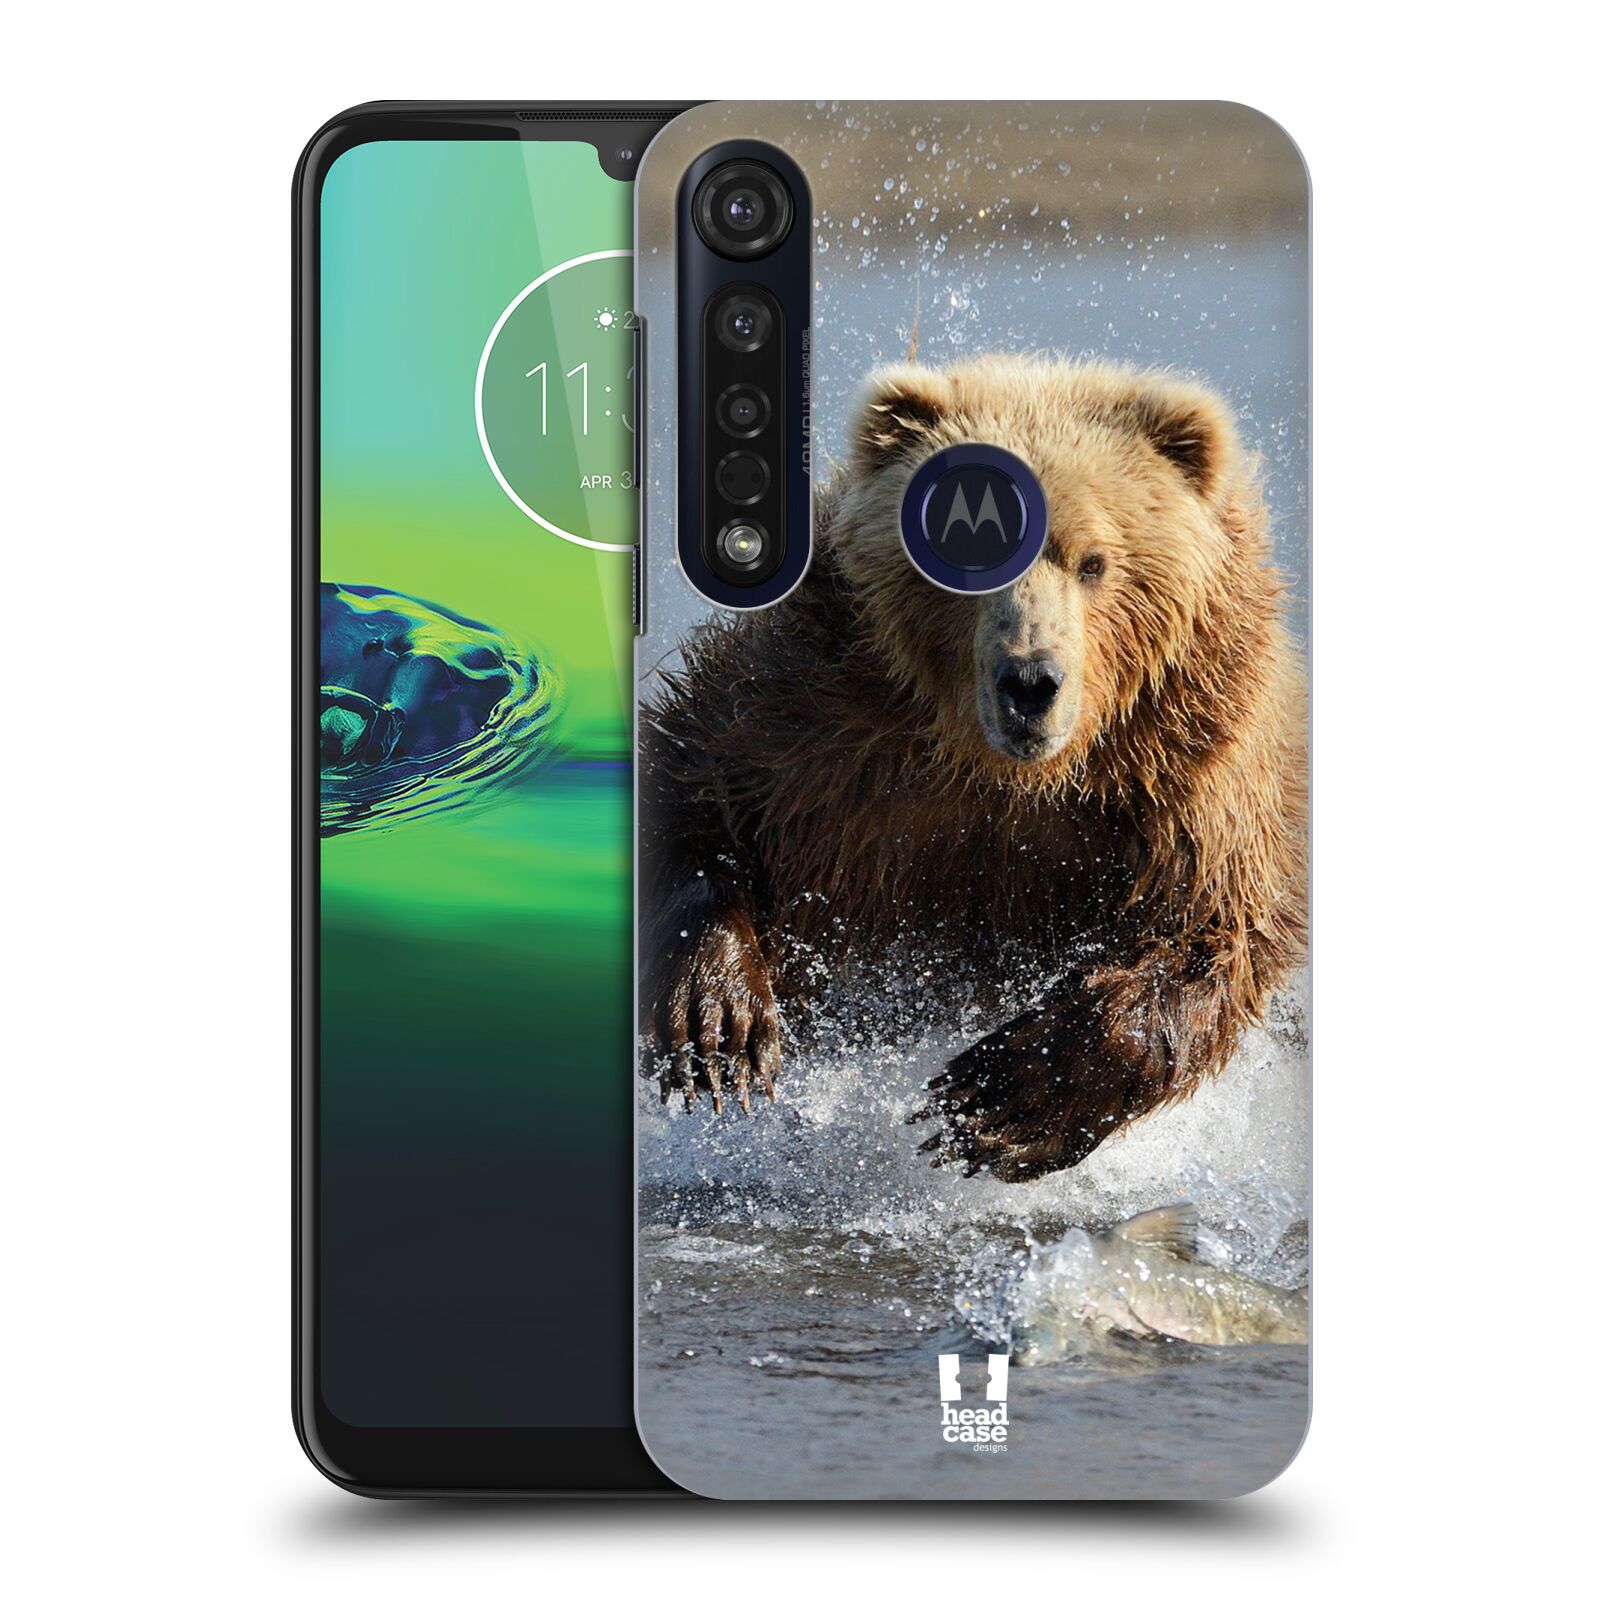 Pouzdro na mobil Motorola Moto G8 PLUS - HEAD CASE - vzor Divočina, Divoký život a zvířata foto MEDVĚD GRIZZLY HŇEDÁ